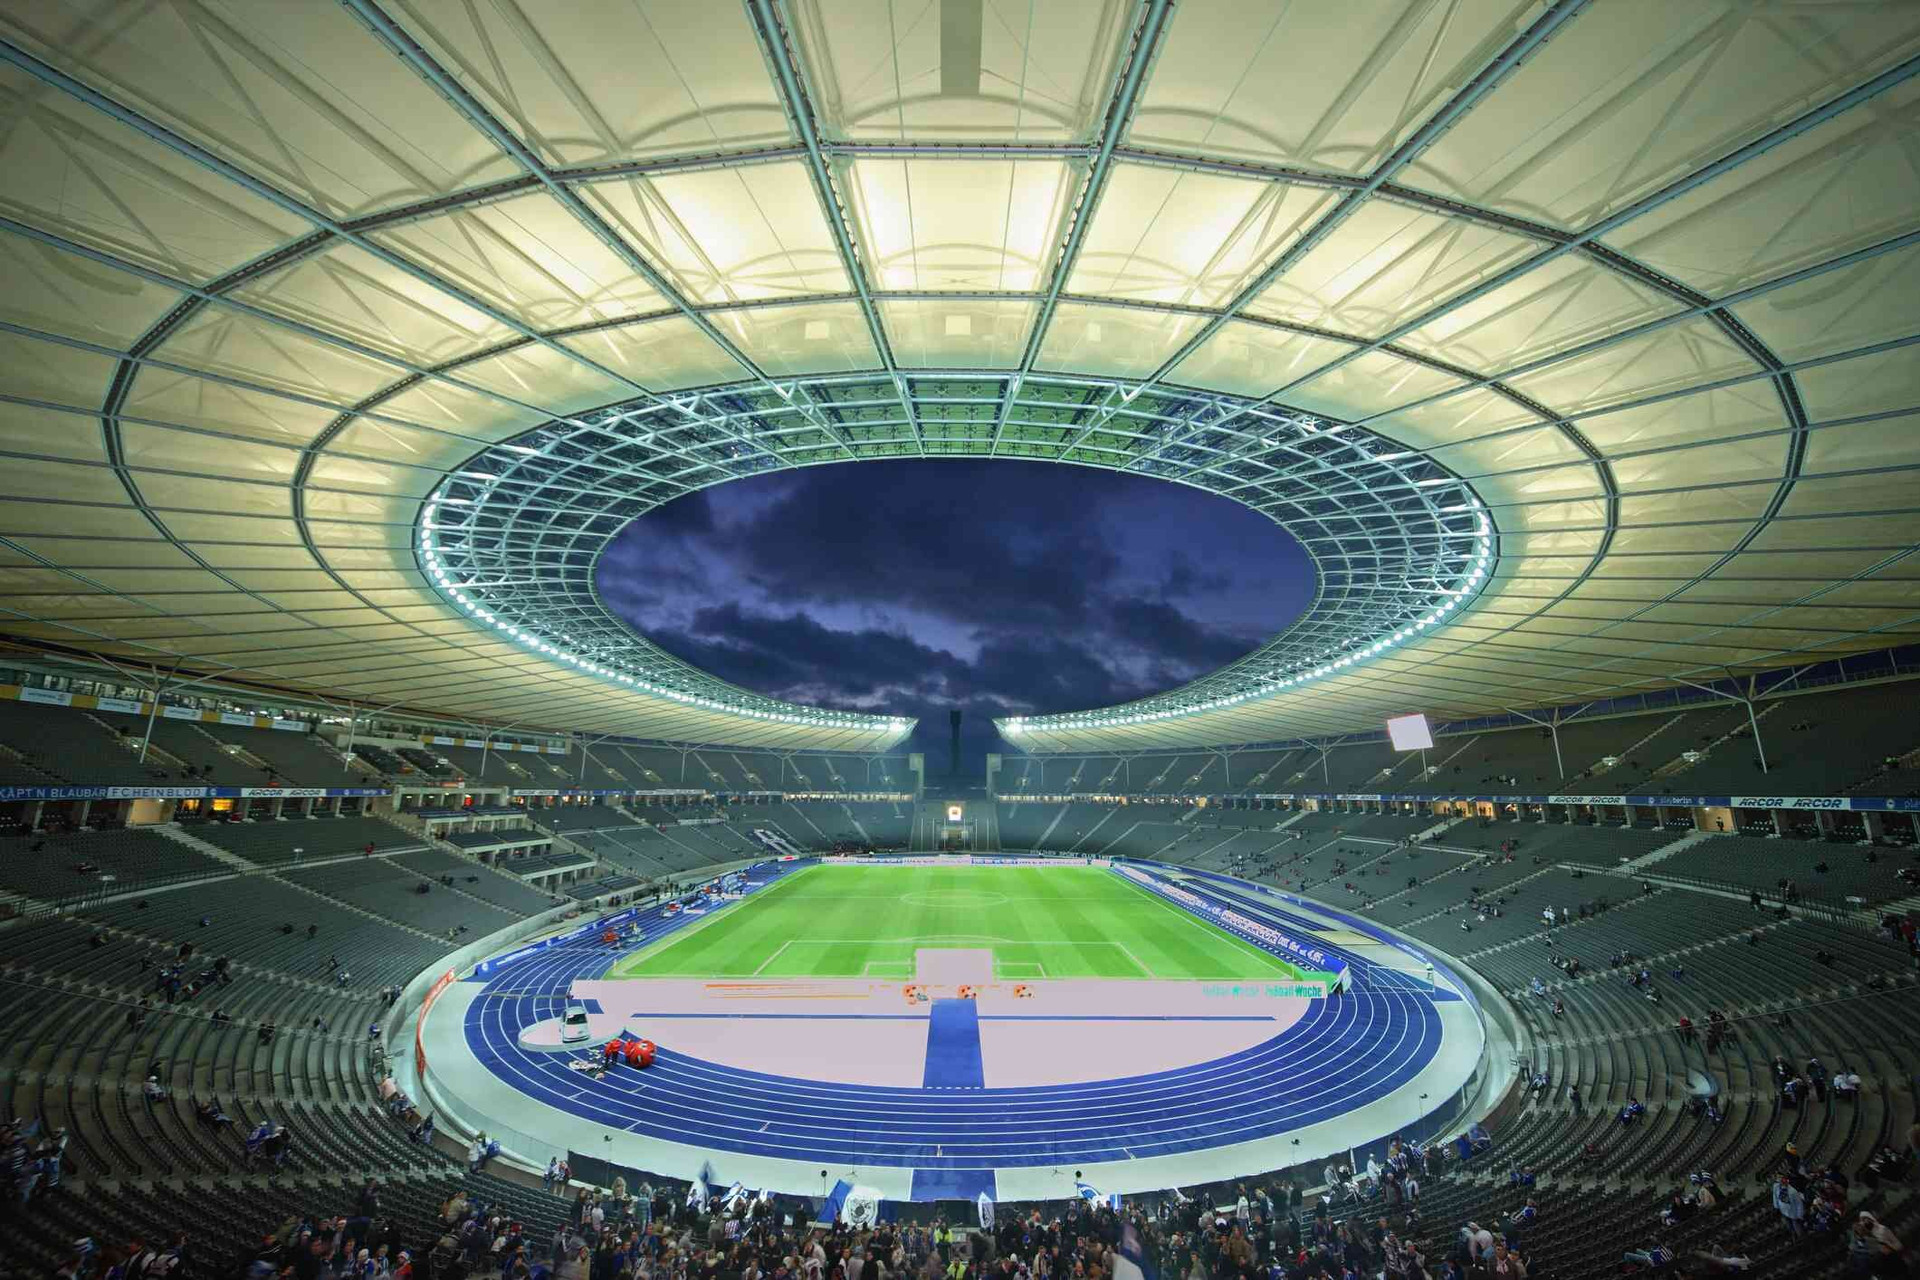 Sân Olympic là công trình thể thao và kiến trúc hàng đầu của Đức, với sức chứa hơn 70.000 người và là sân nhà của Hertha Berlin. Sân được xây theo phong cách Neoclassical. Sân từng tổ chức các kỳ Thế vận hội và World Cup. Năm nay, sân Olympic là nơi diễn ra trận chung kết EURO 2024.